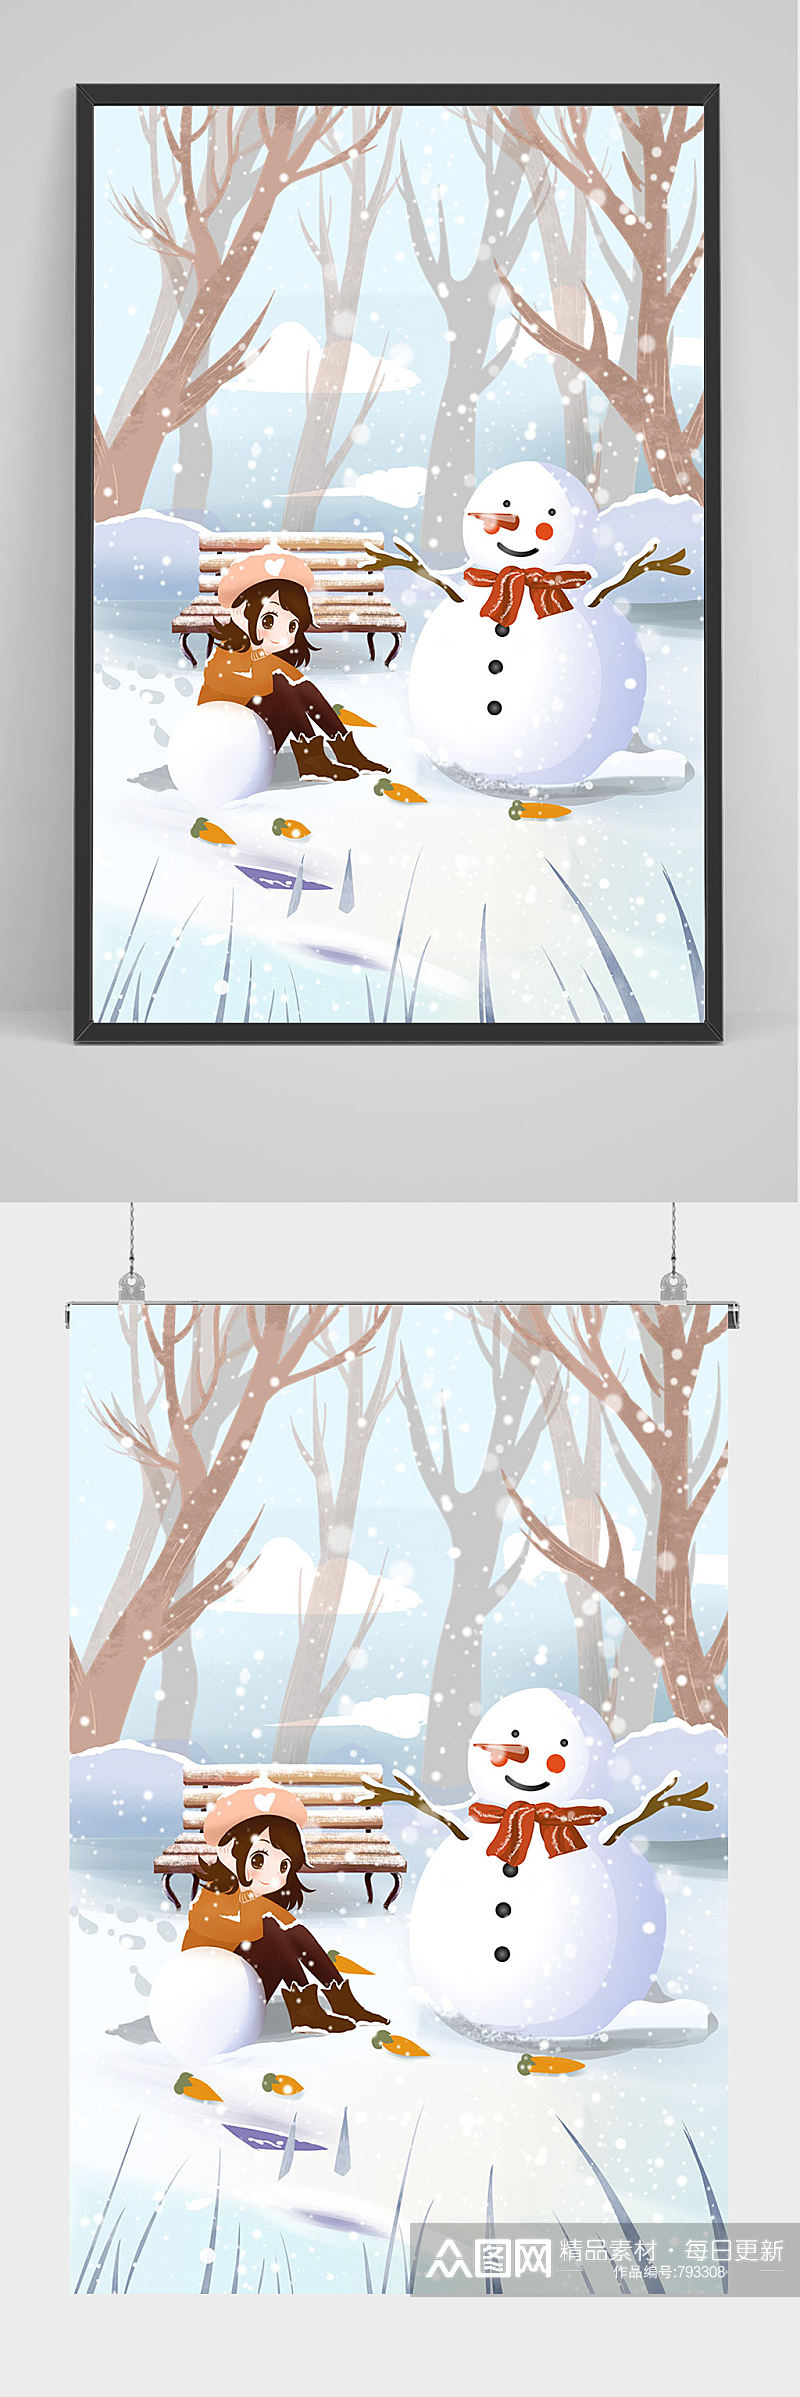 手绘雪地上女孩和雪人插画设计素材